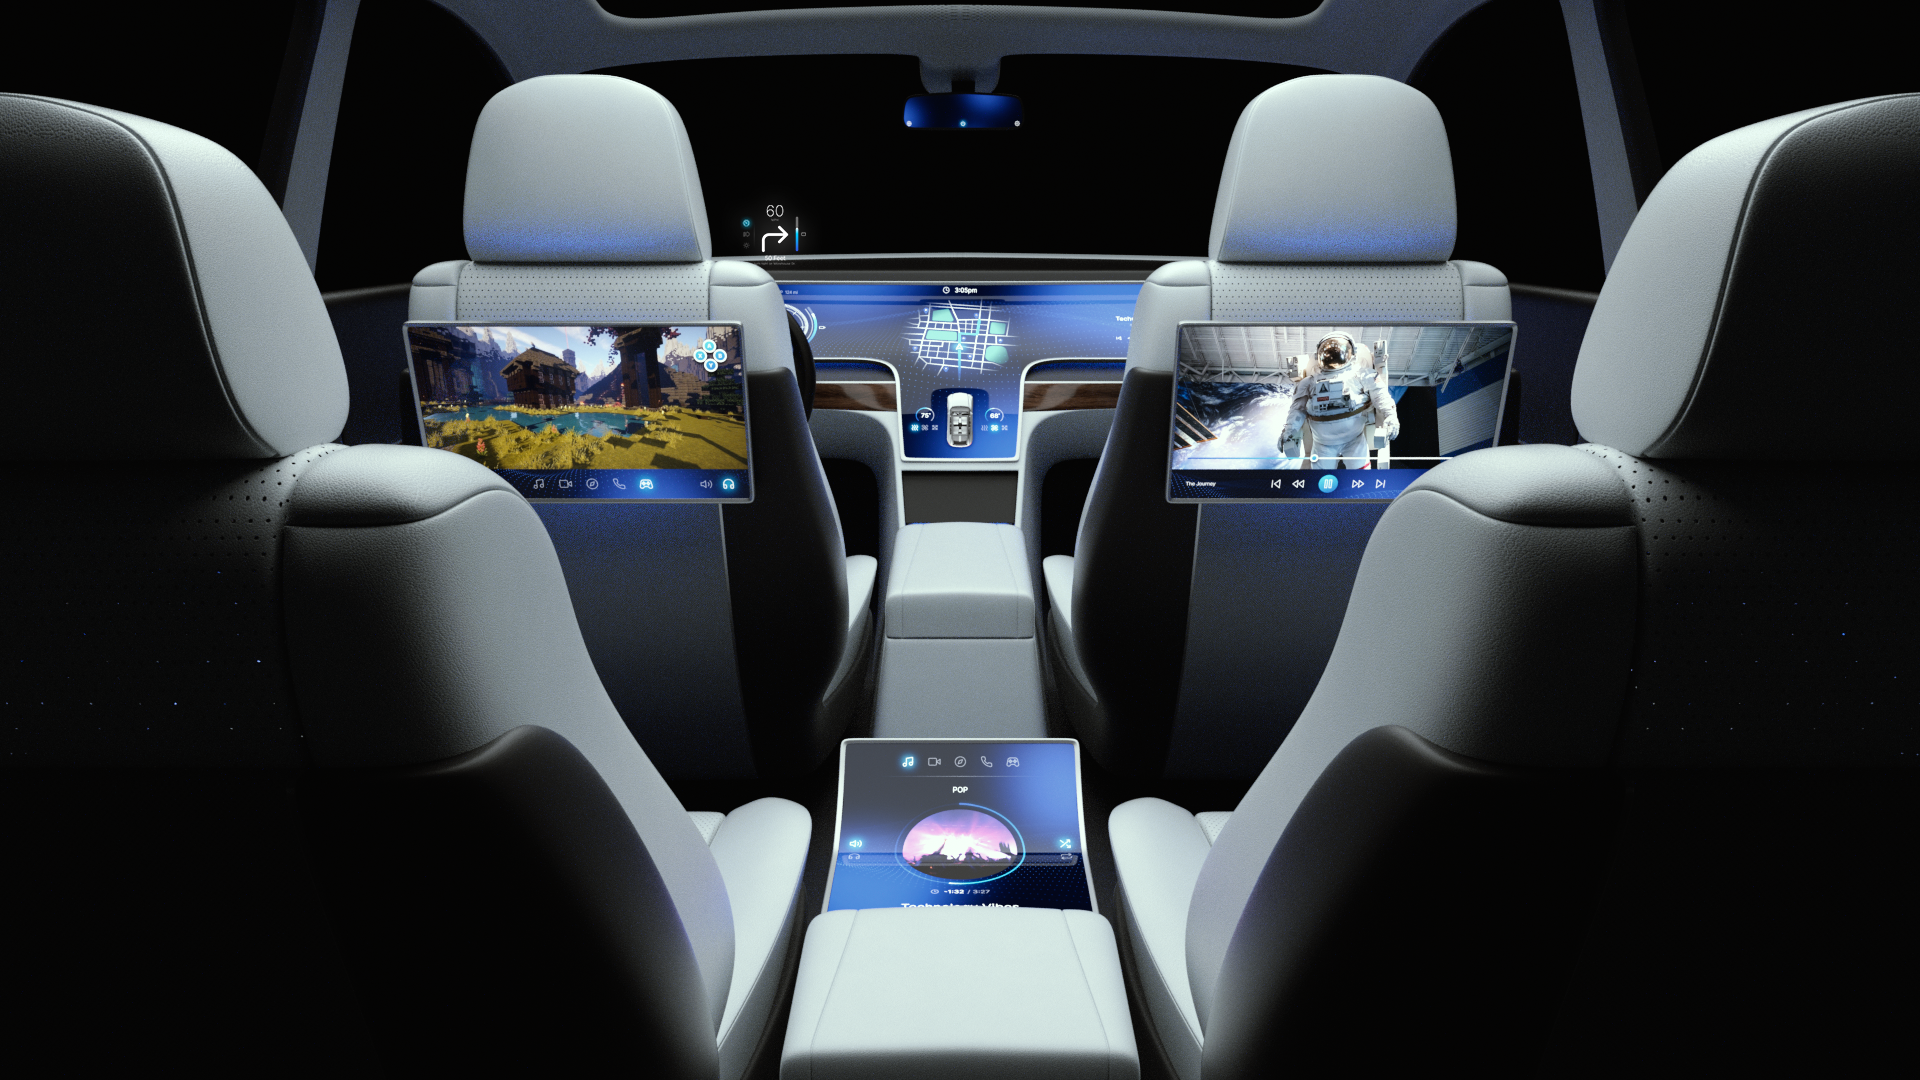 El renderizado del chasis digital Snapdragon de Qualcomm muestra un sistema de infoentretenimiento conectado avanzado en el vehículo